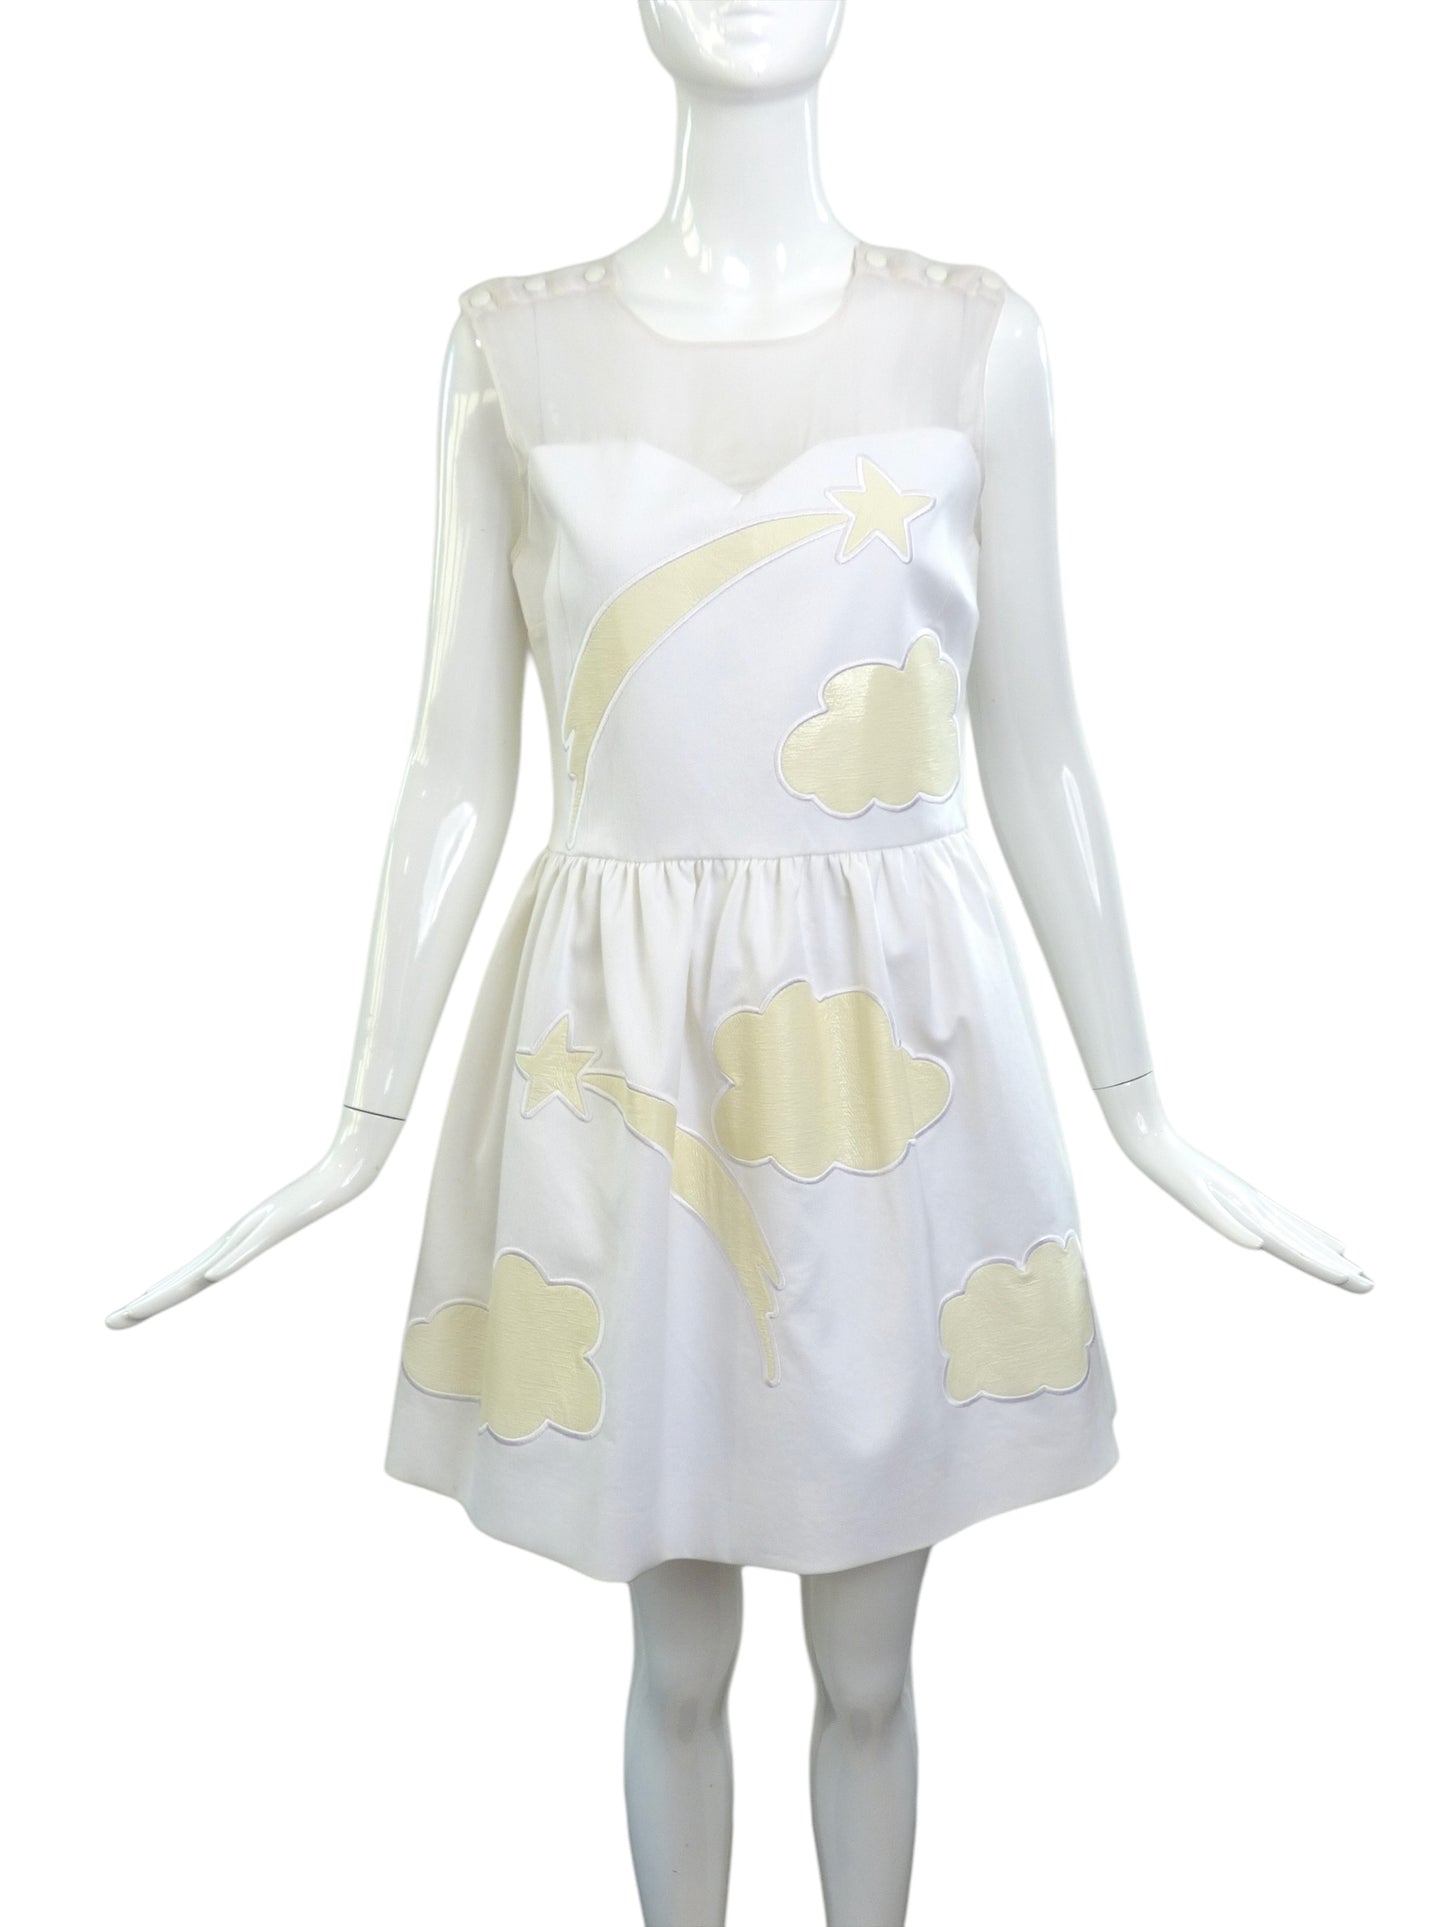 JC de CASTELBAJAC- NWT 2012 Ivory Applique Dress, Size 4